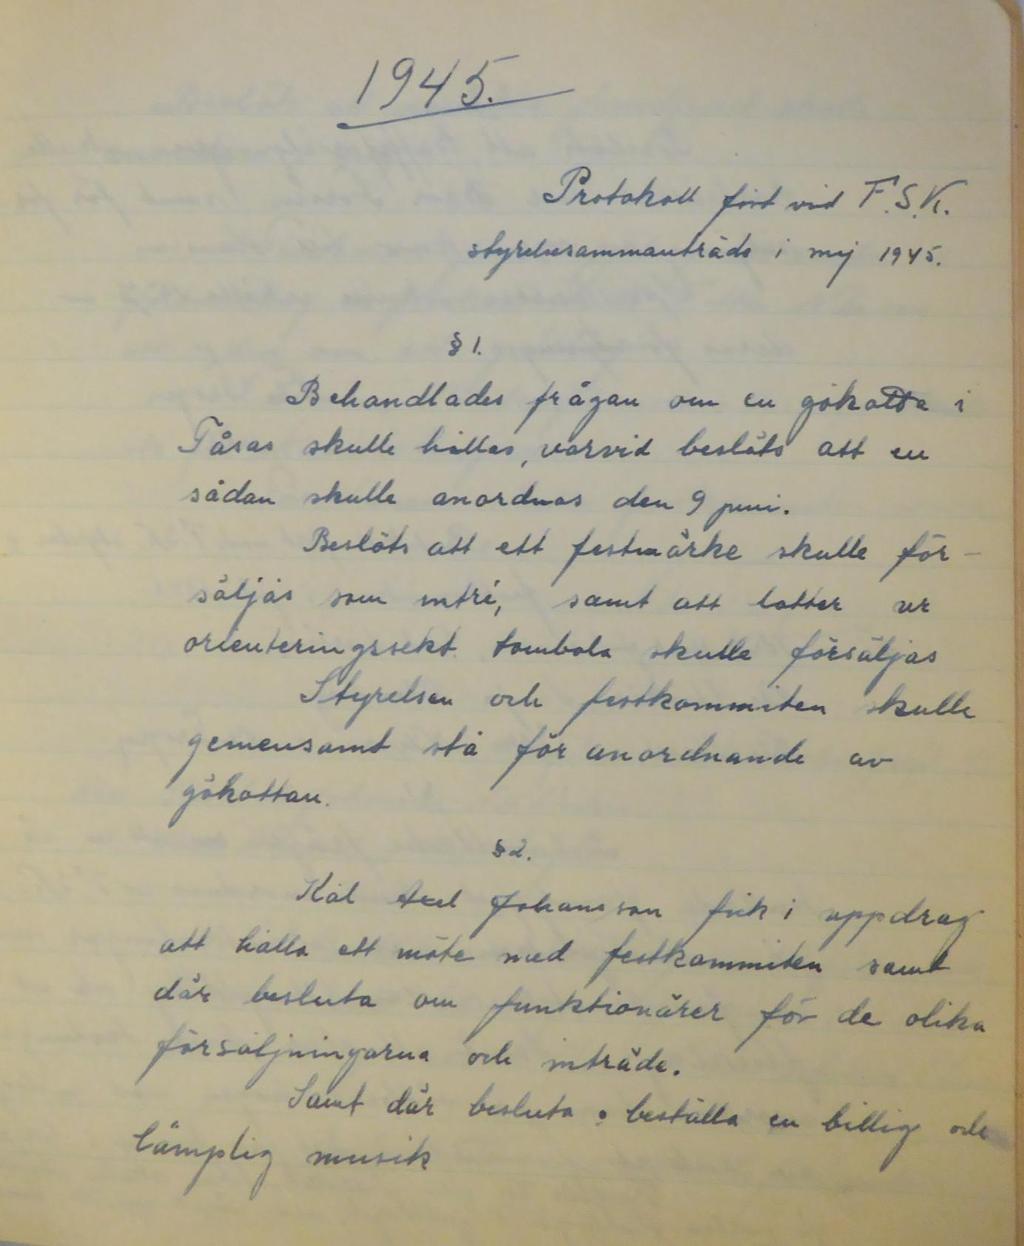 Protokoll fört vid F.S.K. styrelsesammanträde i maj 1945. 1. Behandlades frågan om en gökotta i Fåsås skulle hållas, varvid beslöts att en sådan skulle anordnas den 9 juni.